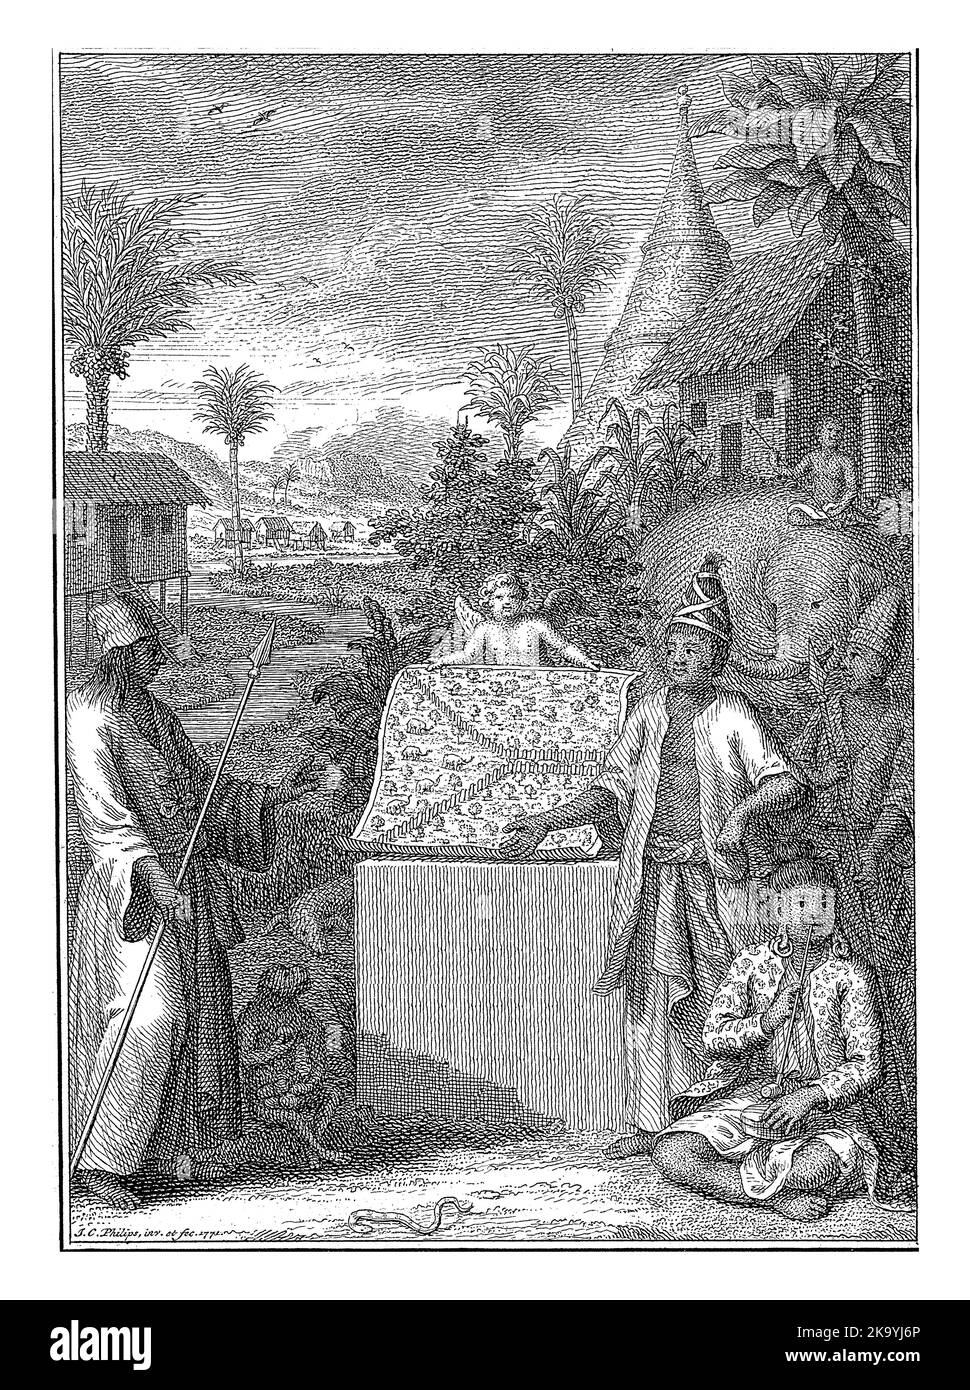 Alegoría de las Indias Orientales, Jan Caspar Philips, 1771 paisaje exótico con animales exóticos y gente con ropa tradicional que representa el Oriente Ind Foto de stock